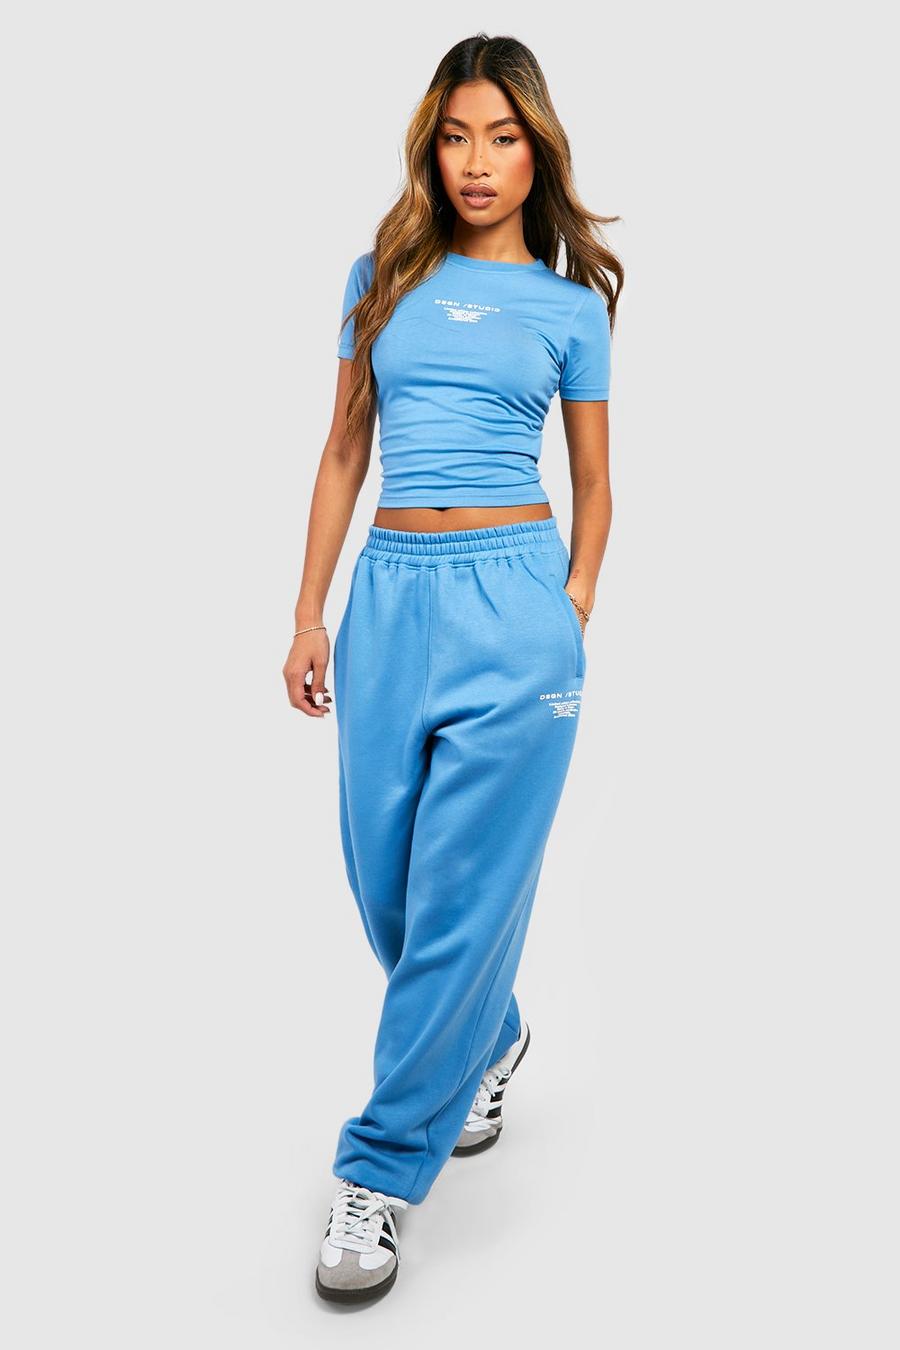 Pantalón deportivo con eslogan Dsgn Studio, Blue